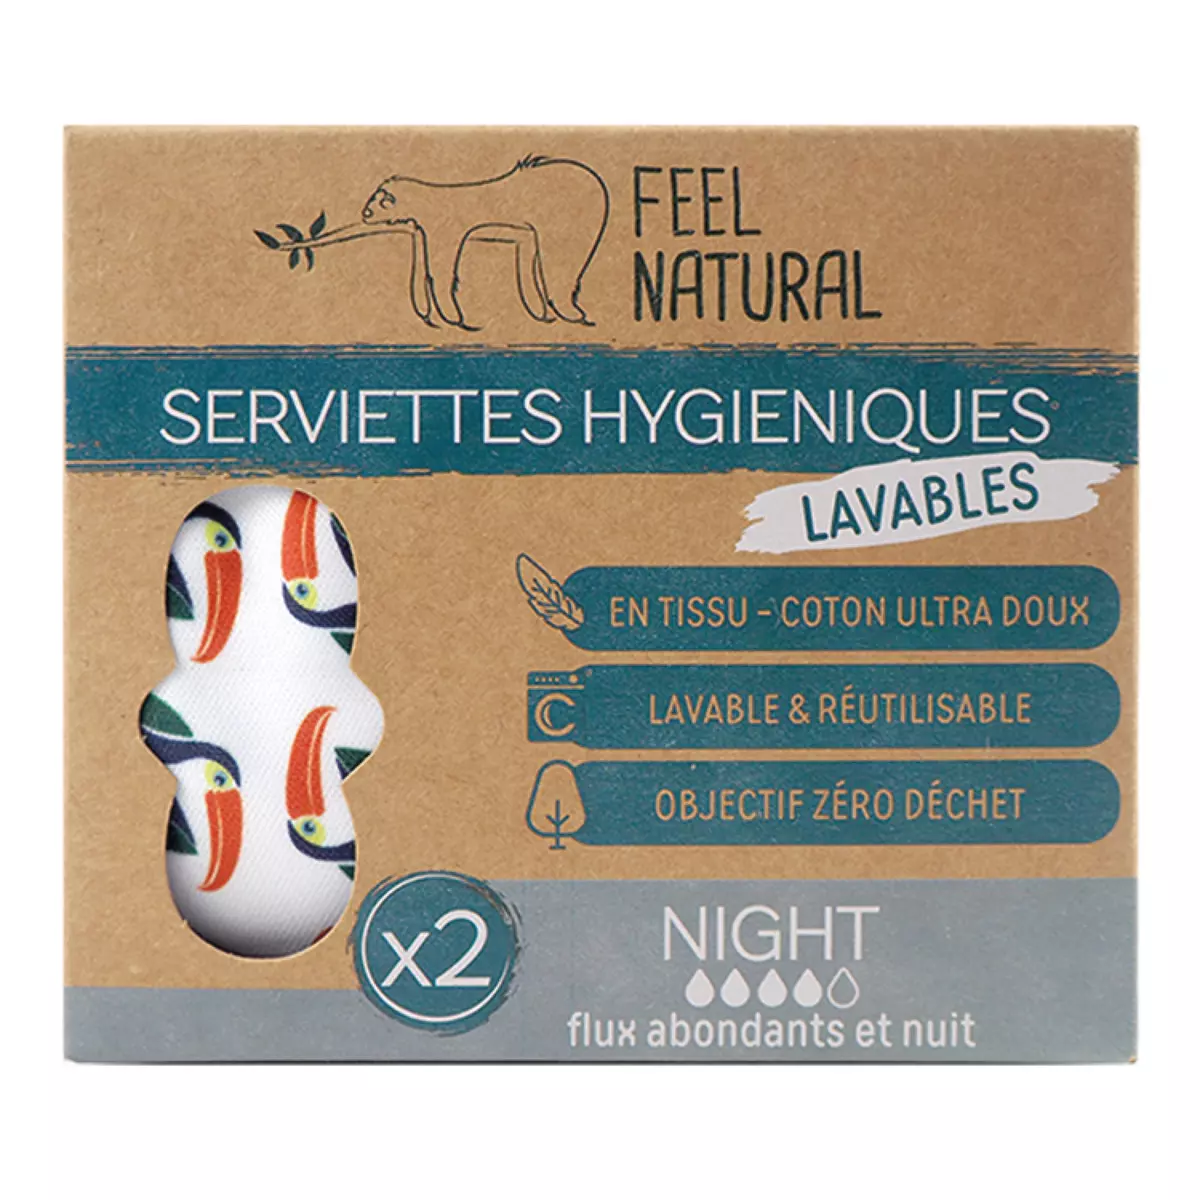 FEEL NATURAL Serviettes hygiéniques lavables night flux abondants et nuit 2 pièces